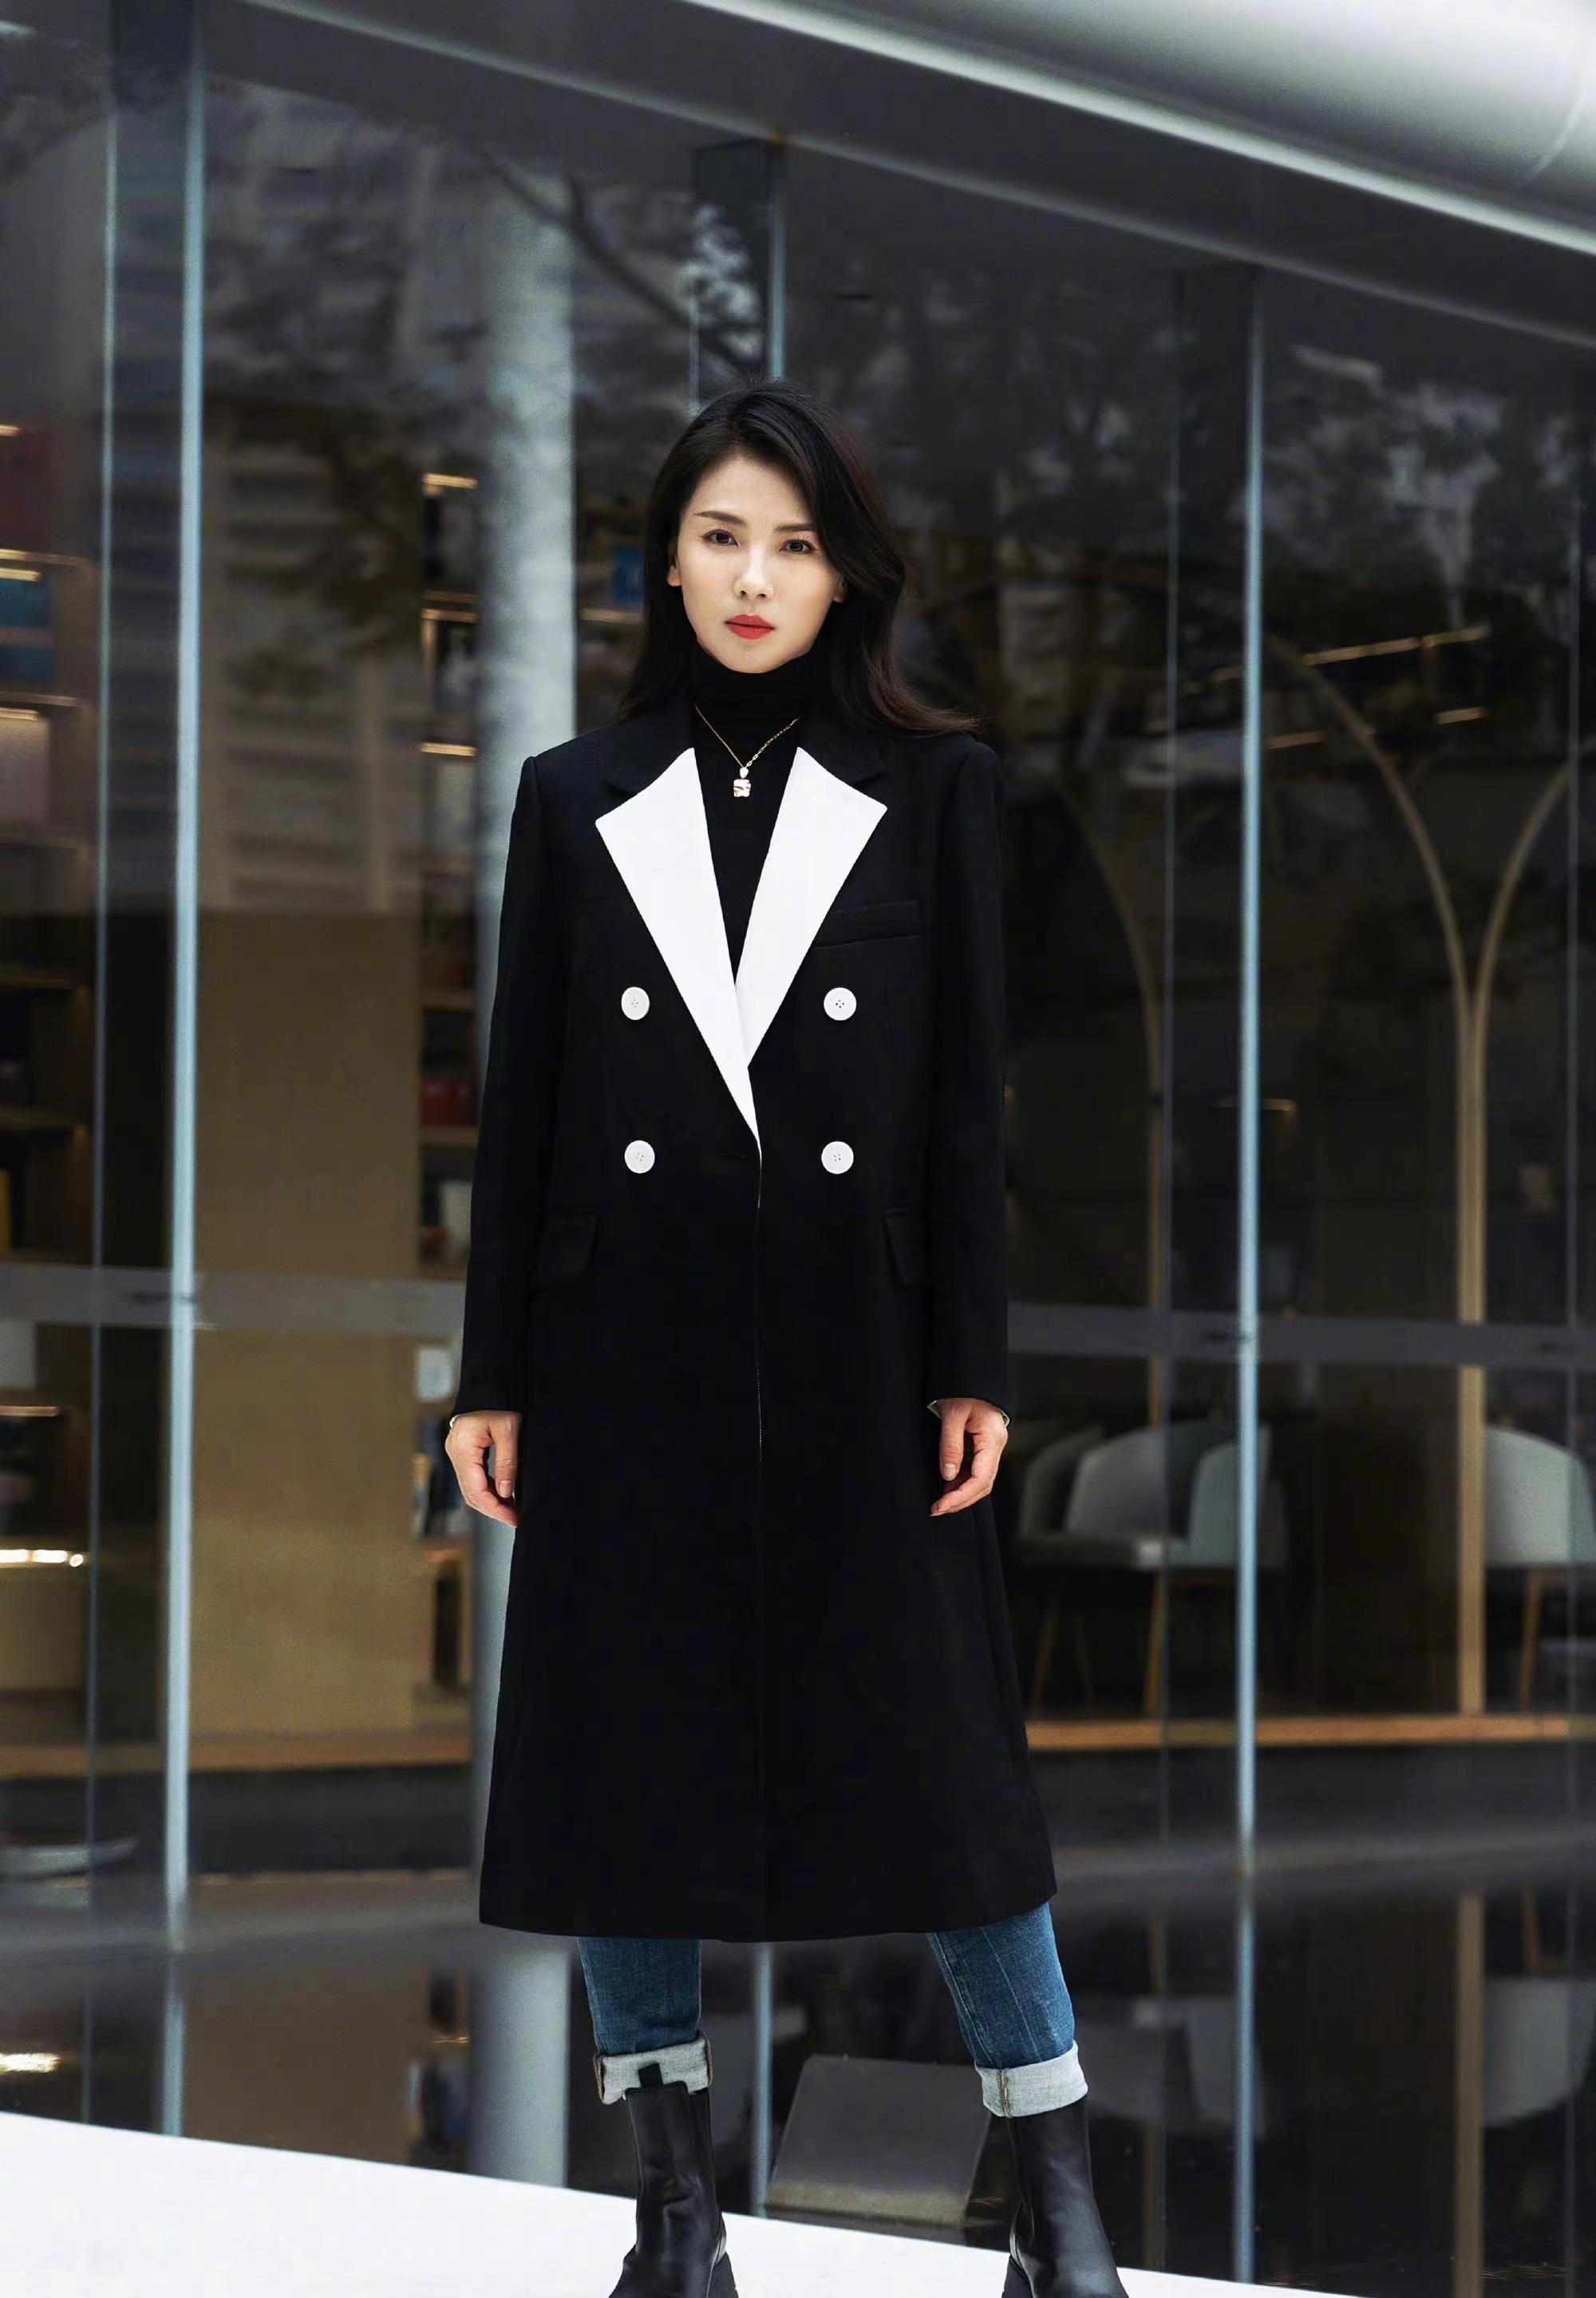 刘涛分享了一套极简风的穿搭,黑色高领内衣 黑白拼色外套,简约时尚